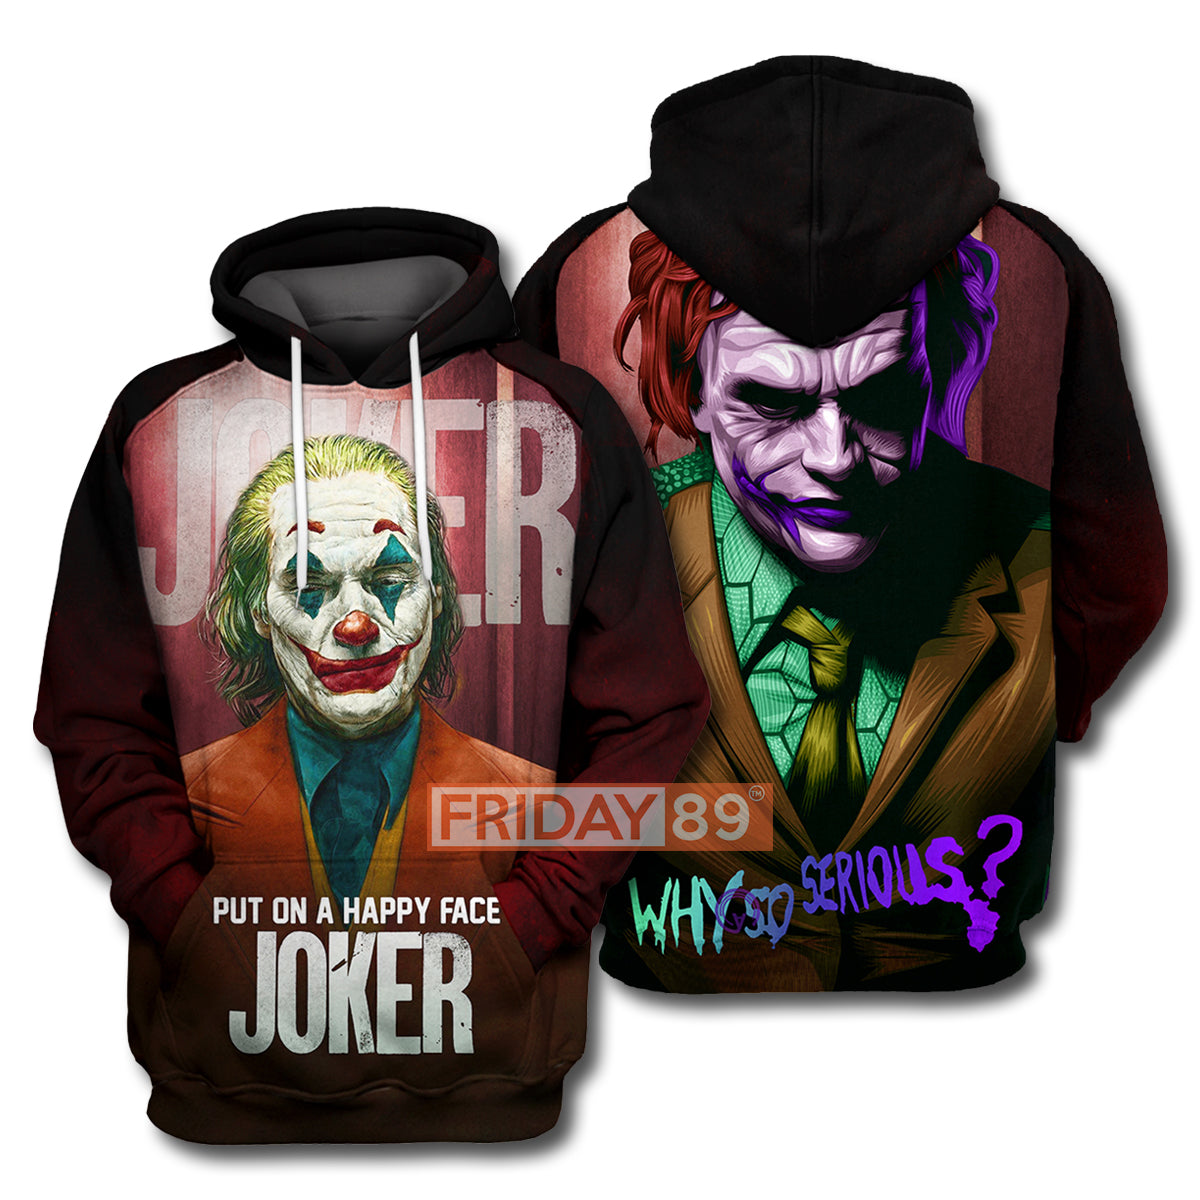 Unifinz DC Joker T-shirt 3D Print Joker Phoenix and H.Ledger T-shirt DC Joker Hoodie Sweater Tank 2022